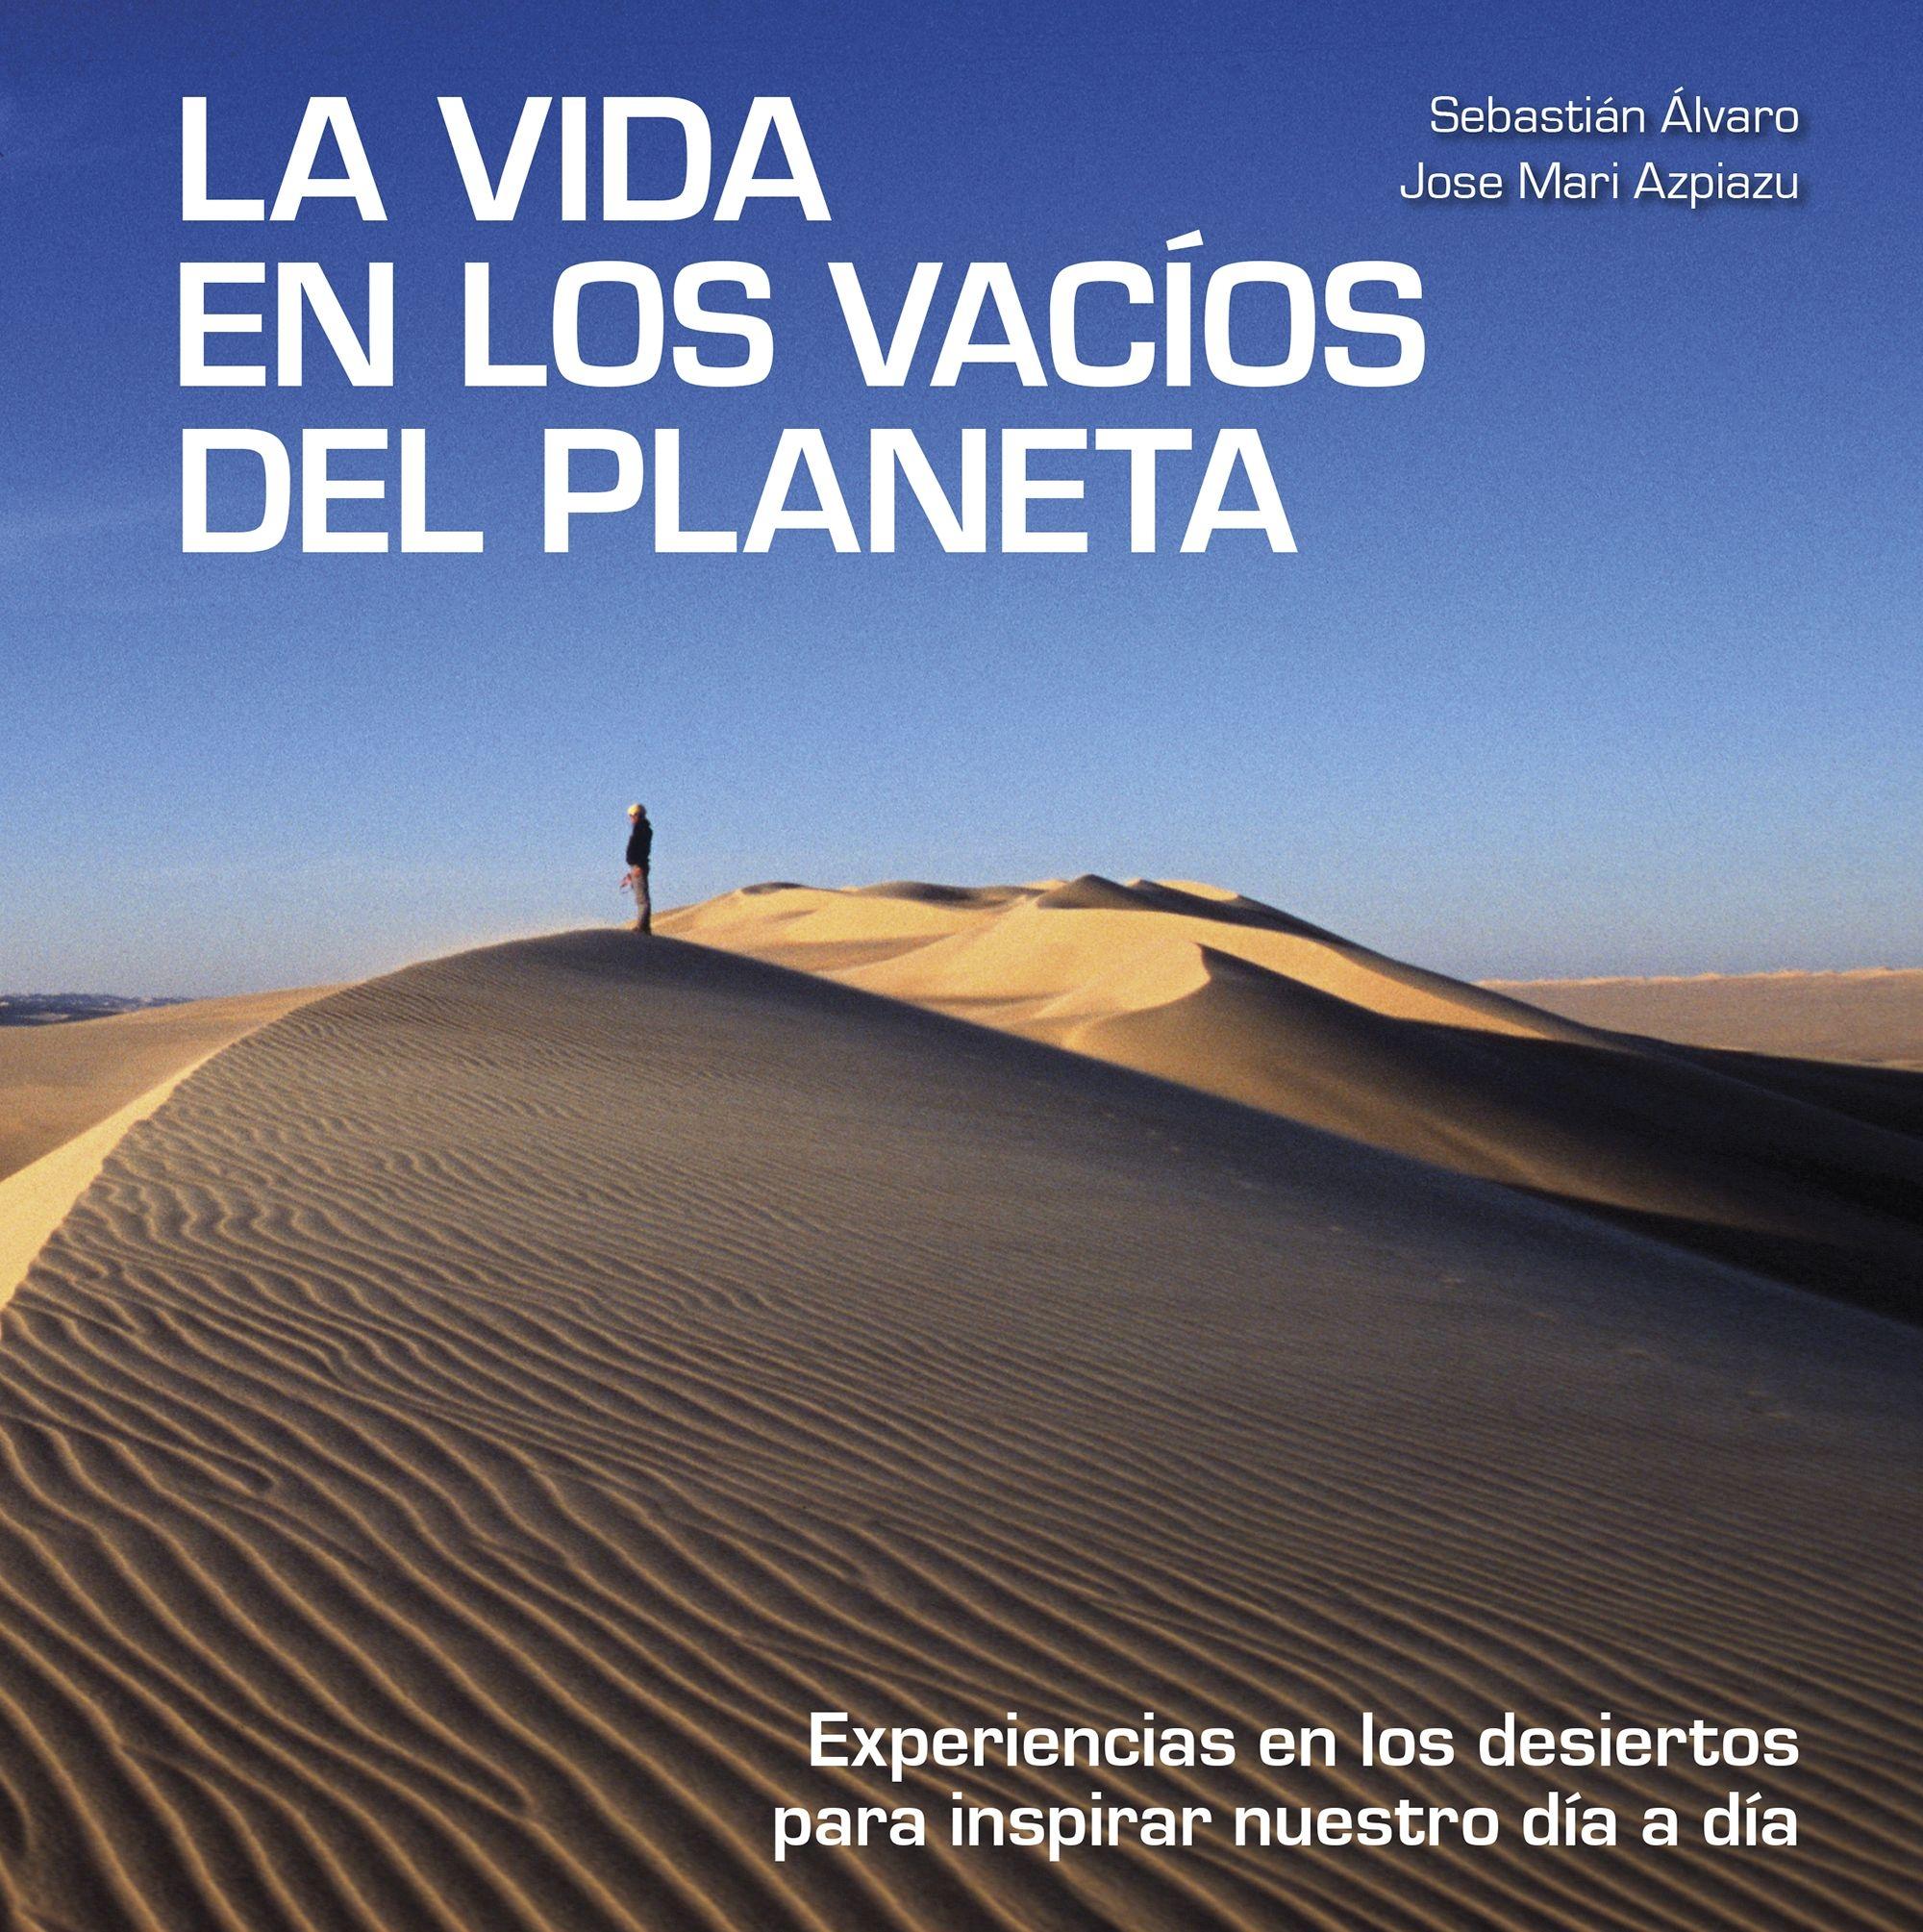 La vida en los vacíos del planeta "Experiencias en los desiertos para inspirar nuestro día a día"